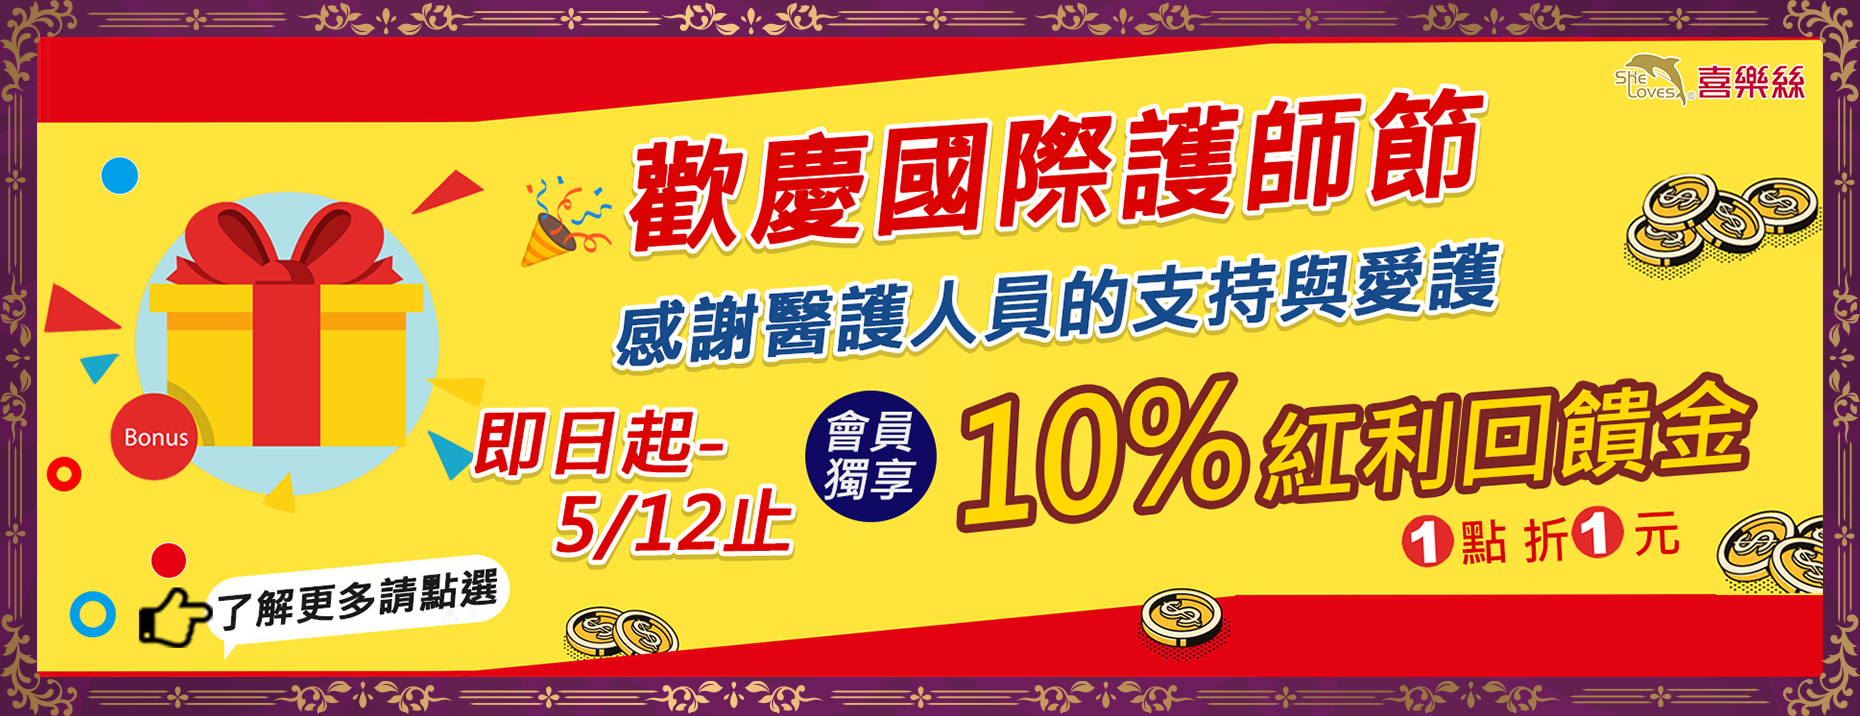 歡慶國際護師節 回饋10%專案